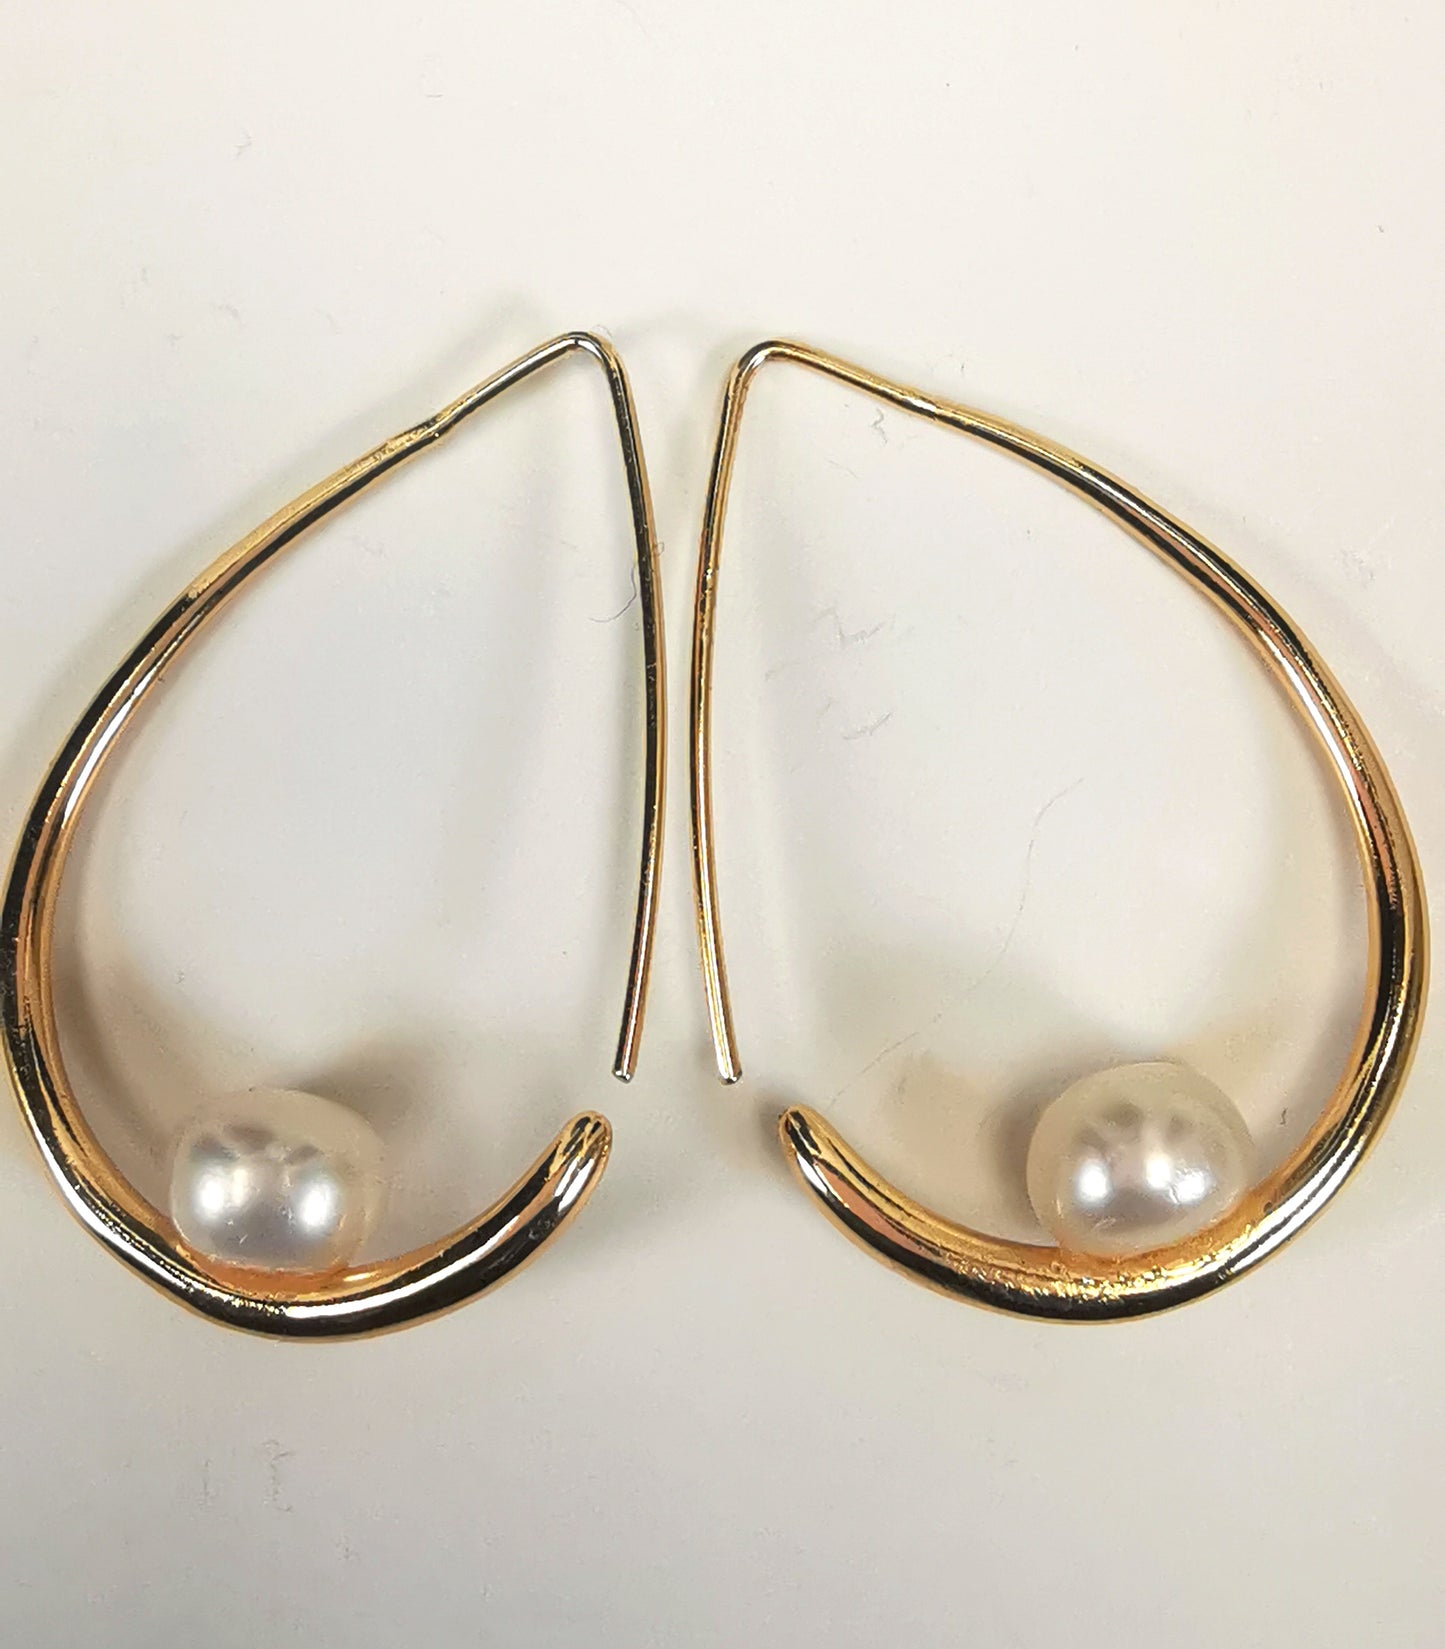 Boucles d'oreilles perles de culture blanches 8mm montées sur un pendant plaqué or. Ces pendants ont la forme d'un contour de poire de 40mm de haut, plus épais en bas avec un brin arrière fin pour pouvoir être enfilé sur l'oreille. Présentés posées cote à cote, en sens inverse, sur un fond blanc. Vue de dessus.